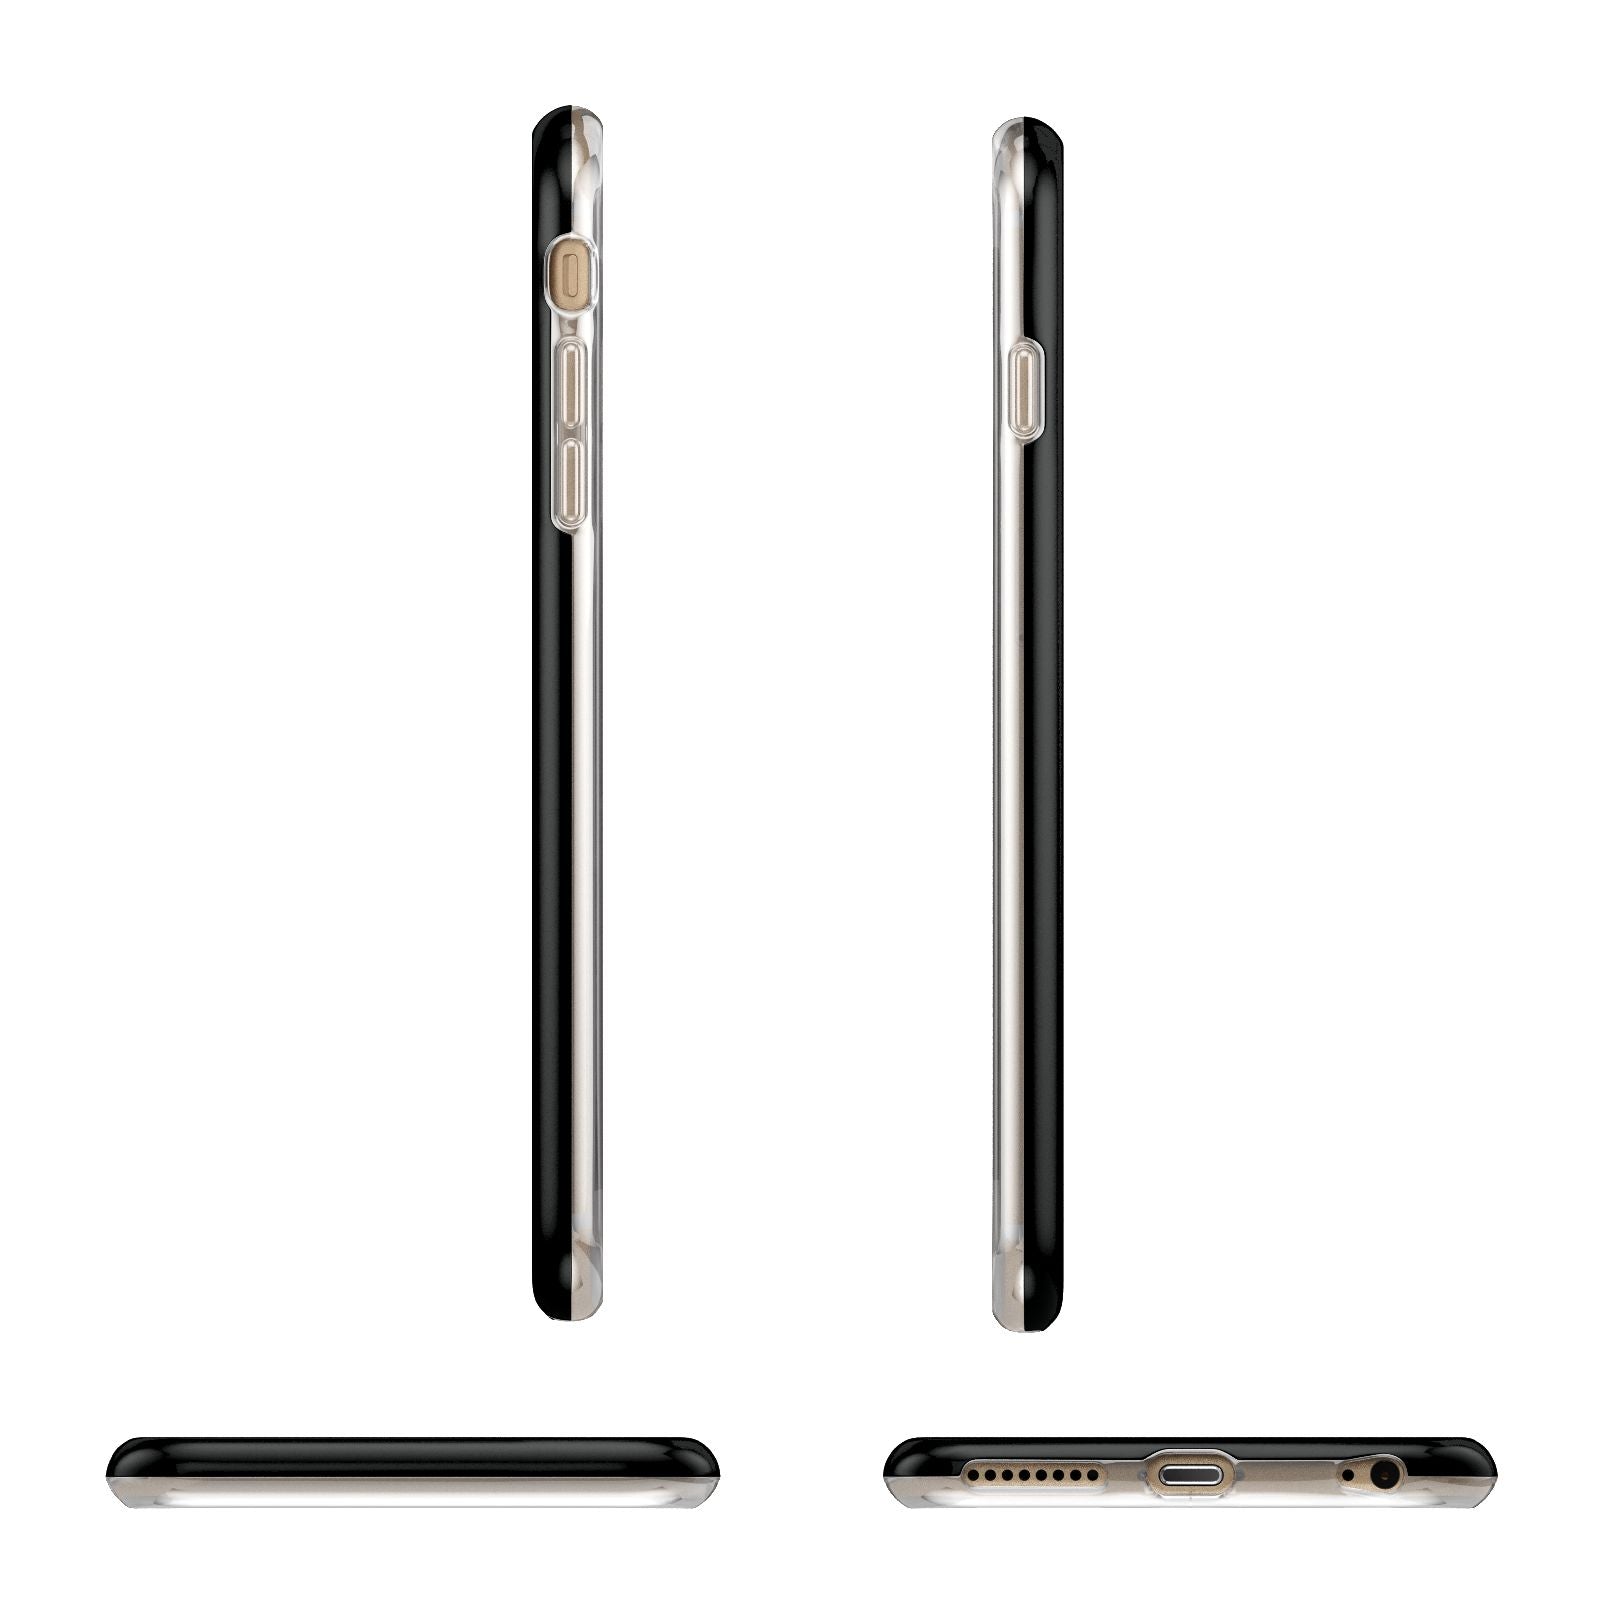 Mr Apple iPhone 6 Plus 3D Wrap Tough Case Alternative Image Angles